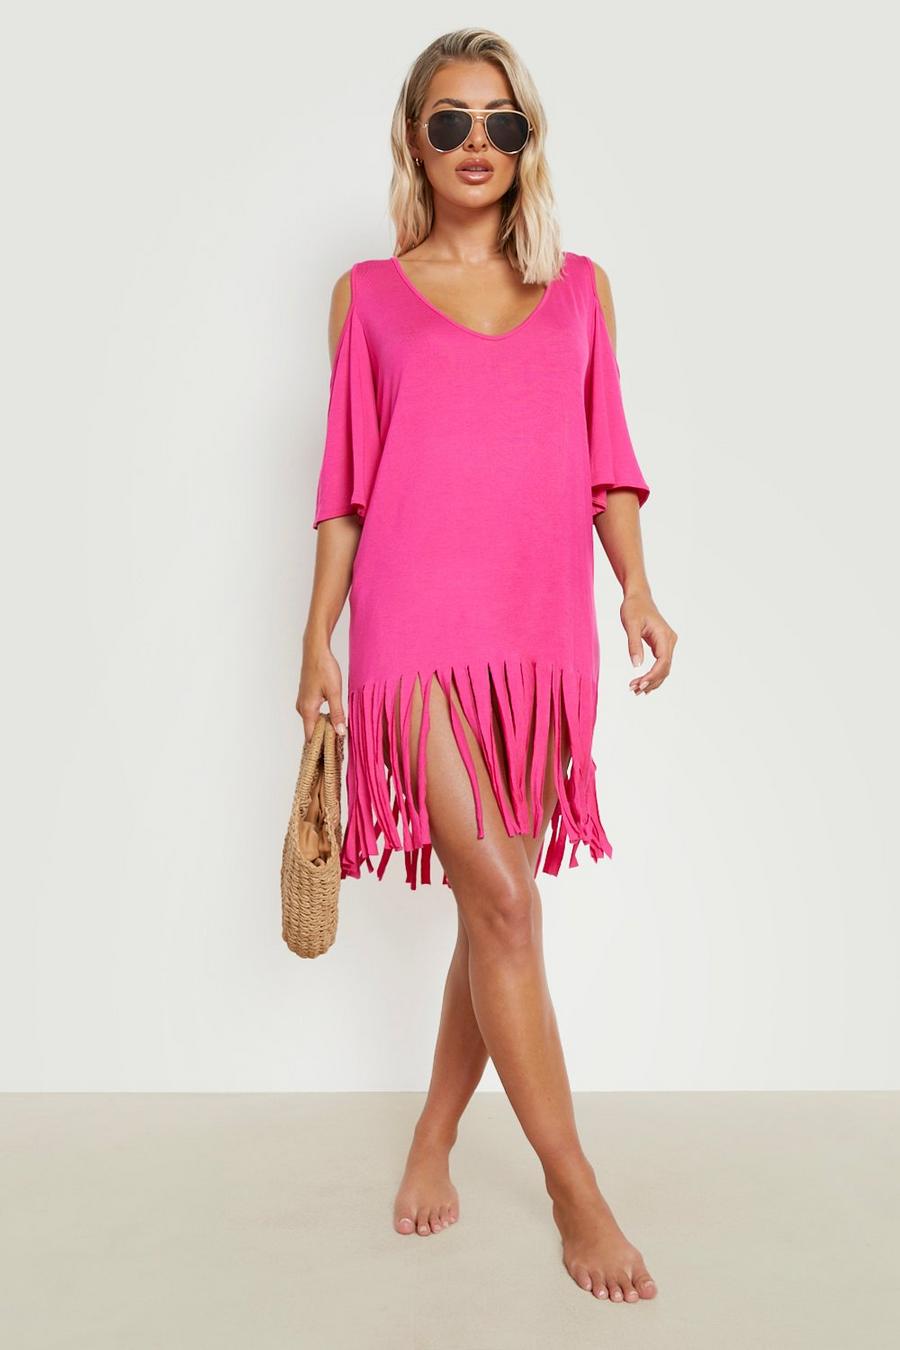 ורוד לוהט pink שמלת חוף עם פתחים בכתפיים ופרנזים